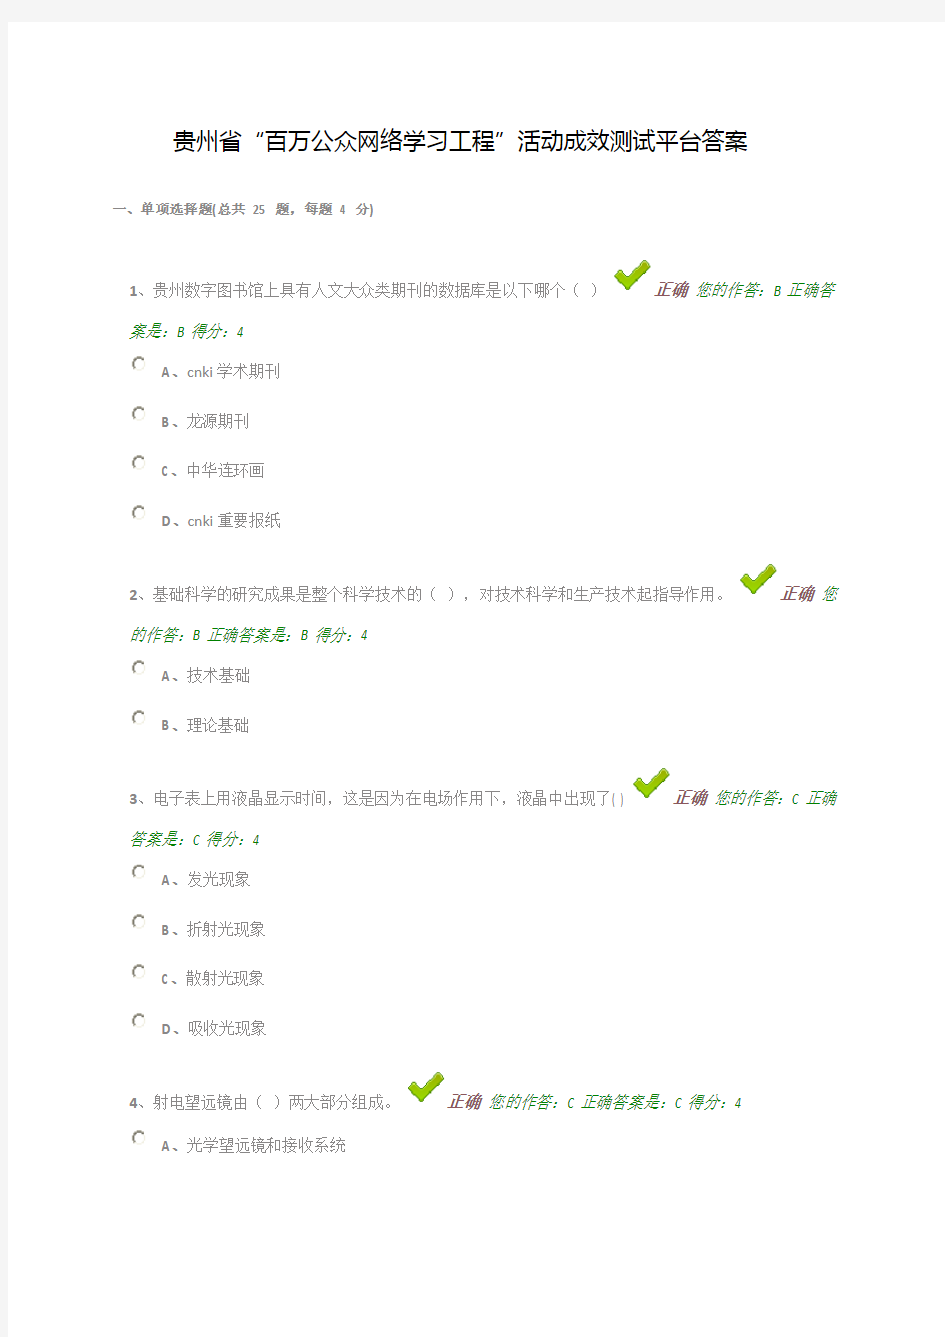 贵州省“百万公众网络学习工程”活动成效测试平台答案63366